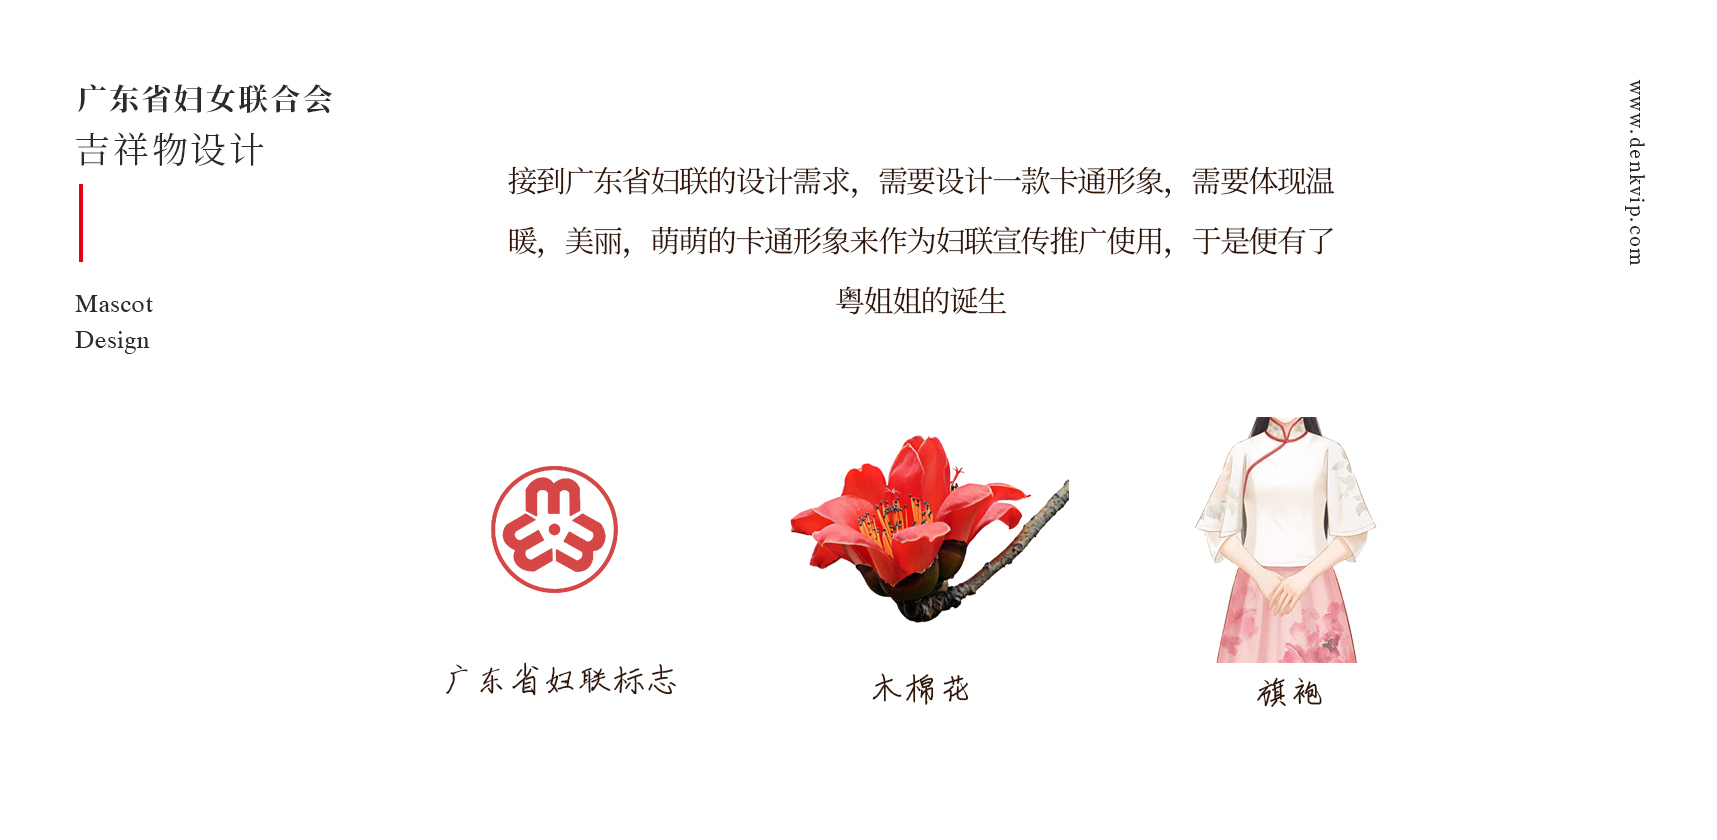 广东省妇联表情包设计